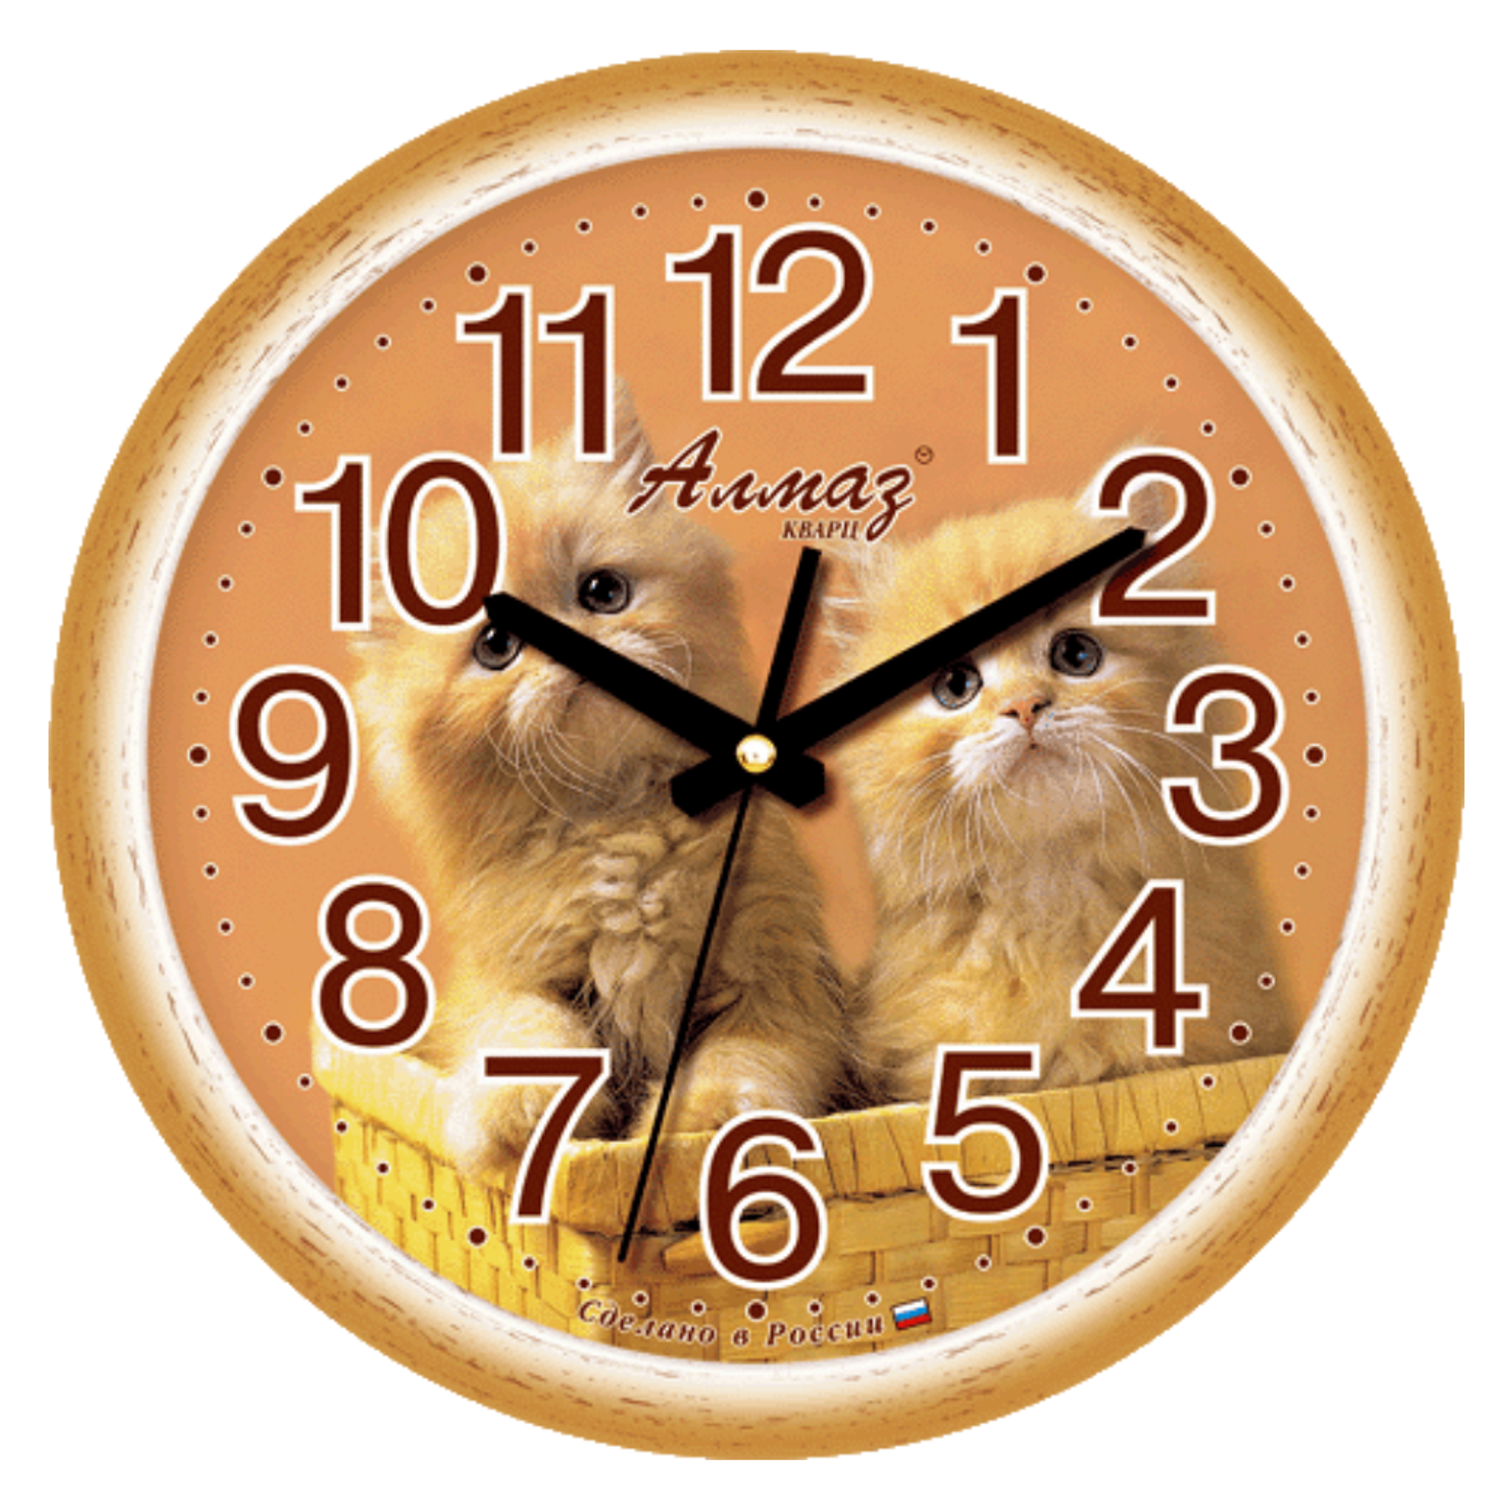 Часы АлмазНН настенные круглые бело-коричневые 28.5 см - фото 1